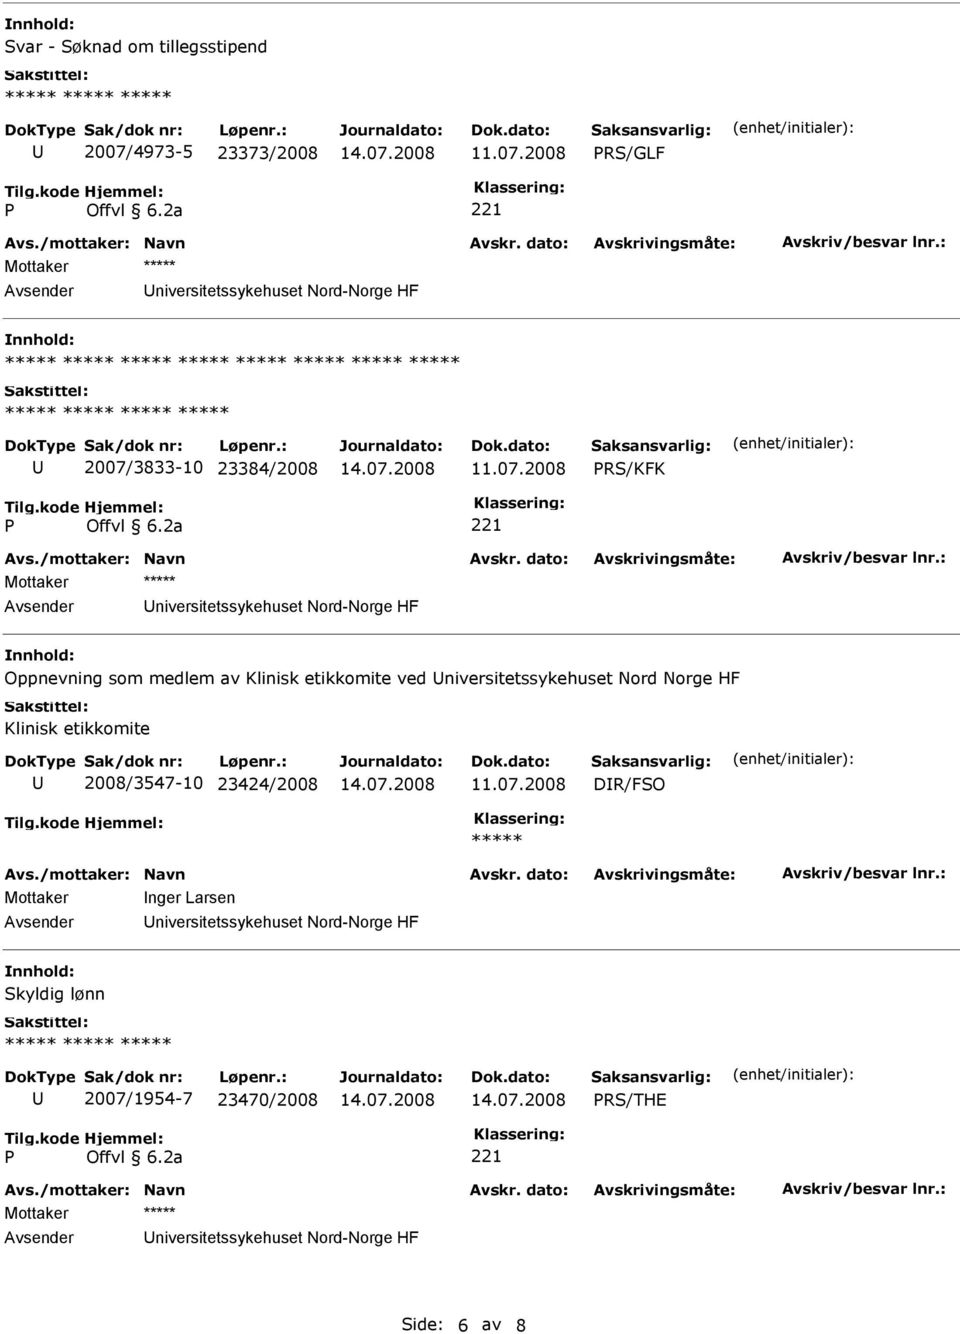 etikkomite ved niversitetssykehuset Nord Norge HF Klinisk etikkomite 2008/3547-10 23424/2008 DR/FSO Mottaker nger Larsen